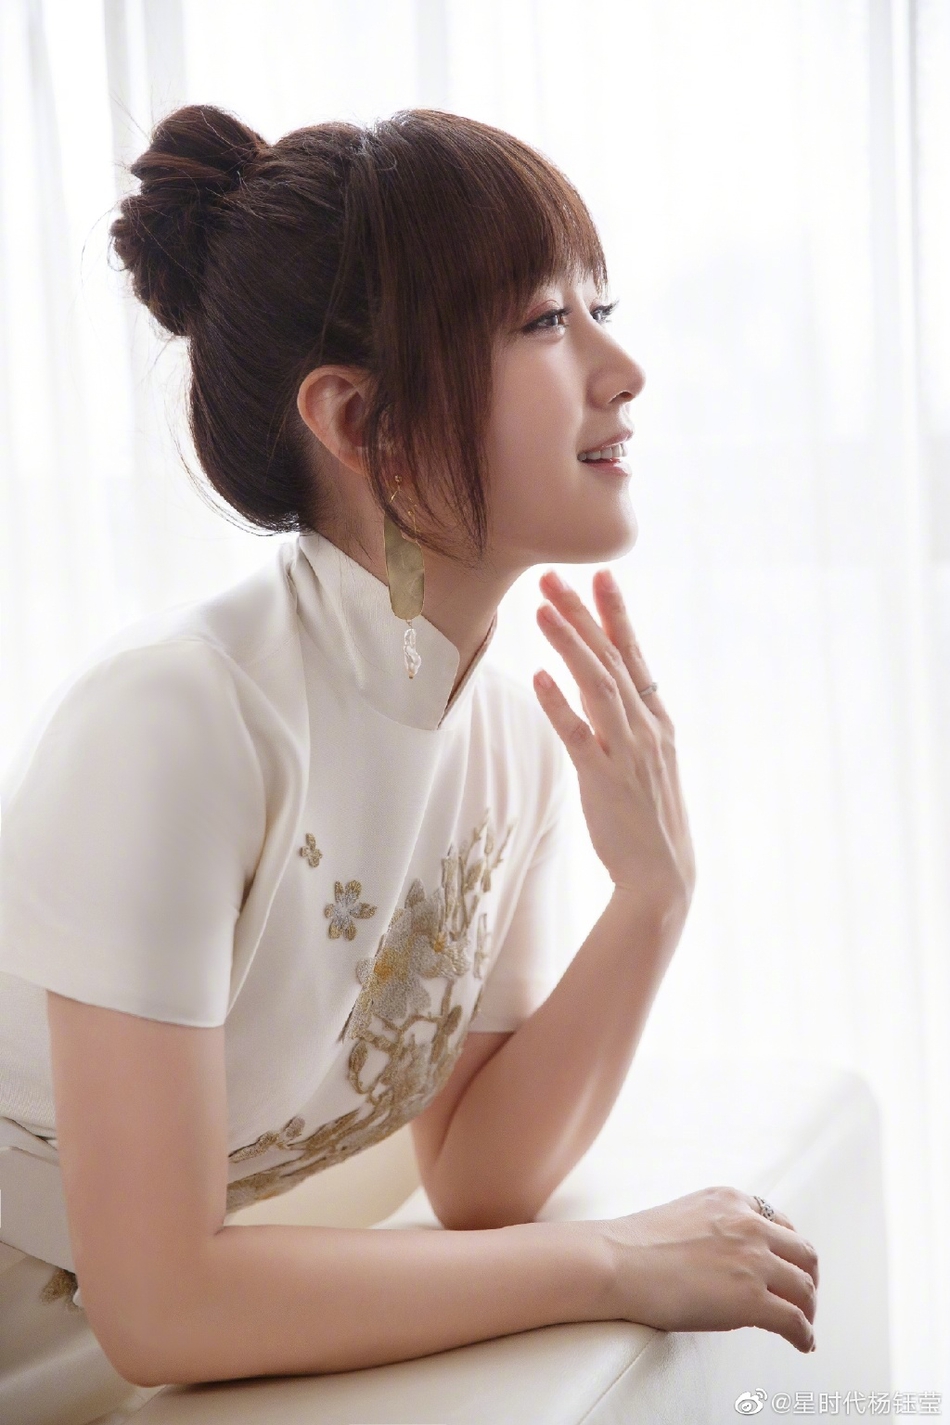 杨钰莹一袭白色刺绣长裙拍写真低头浅笑气质优雅